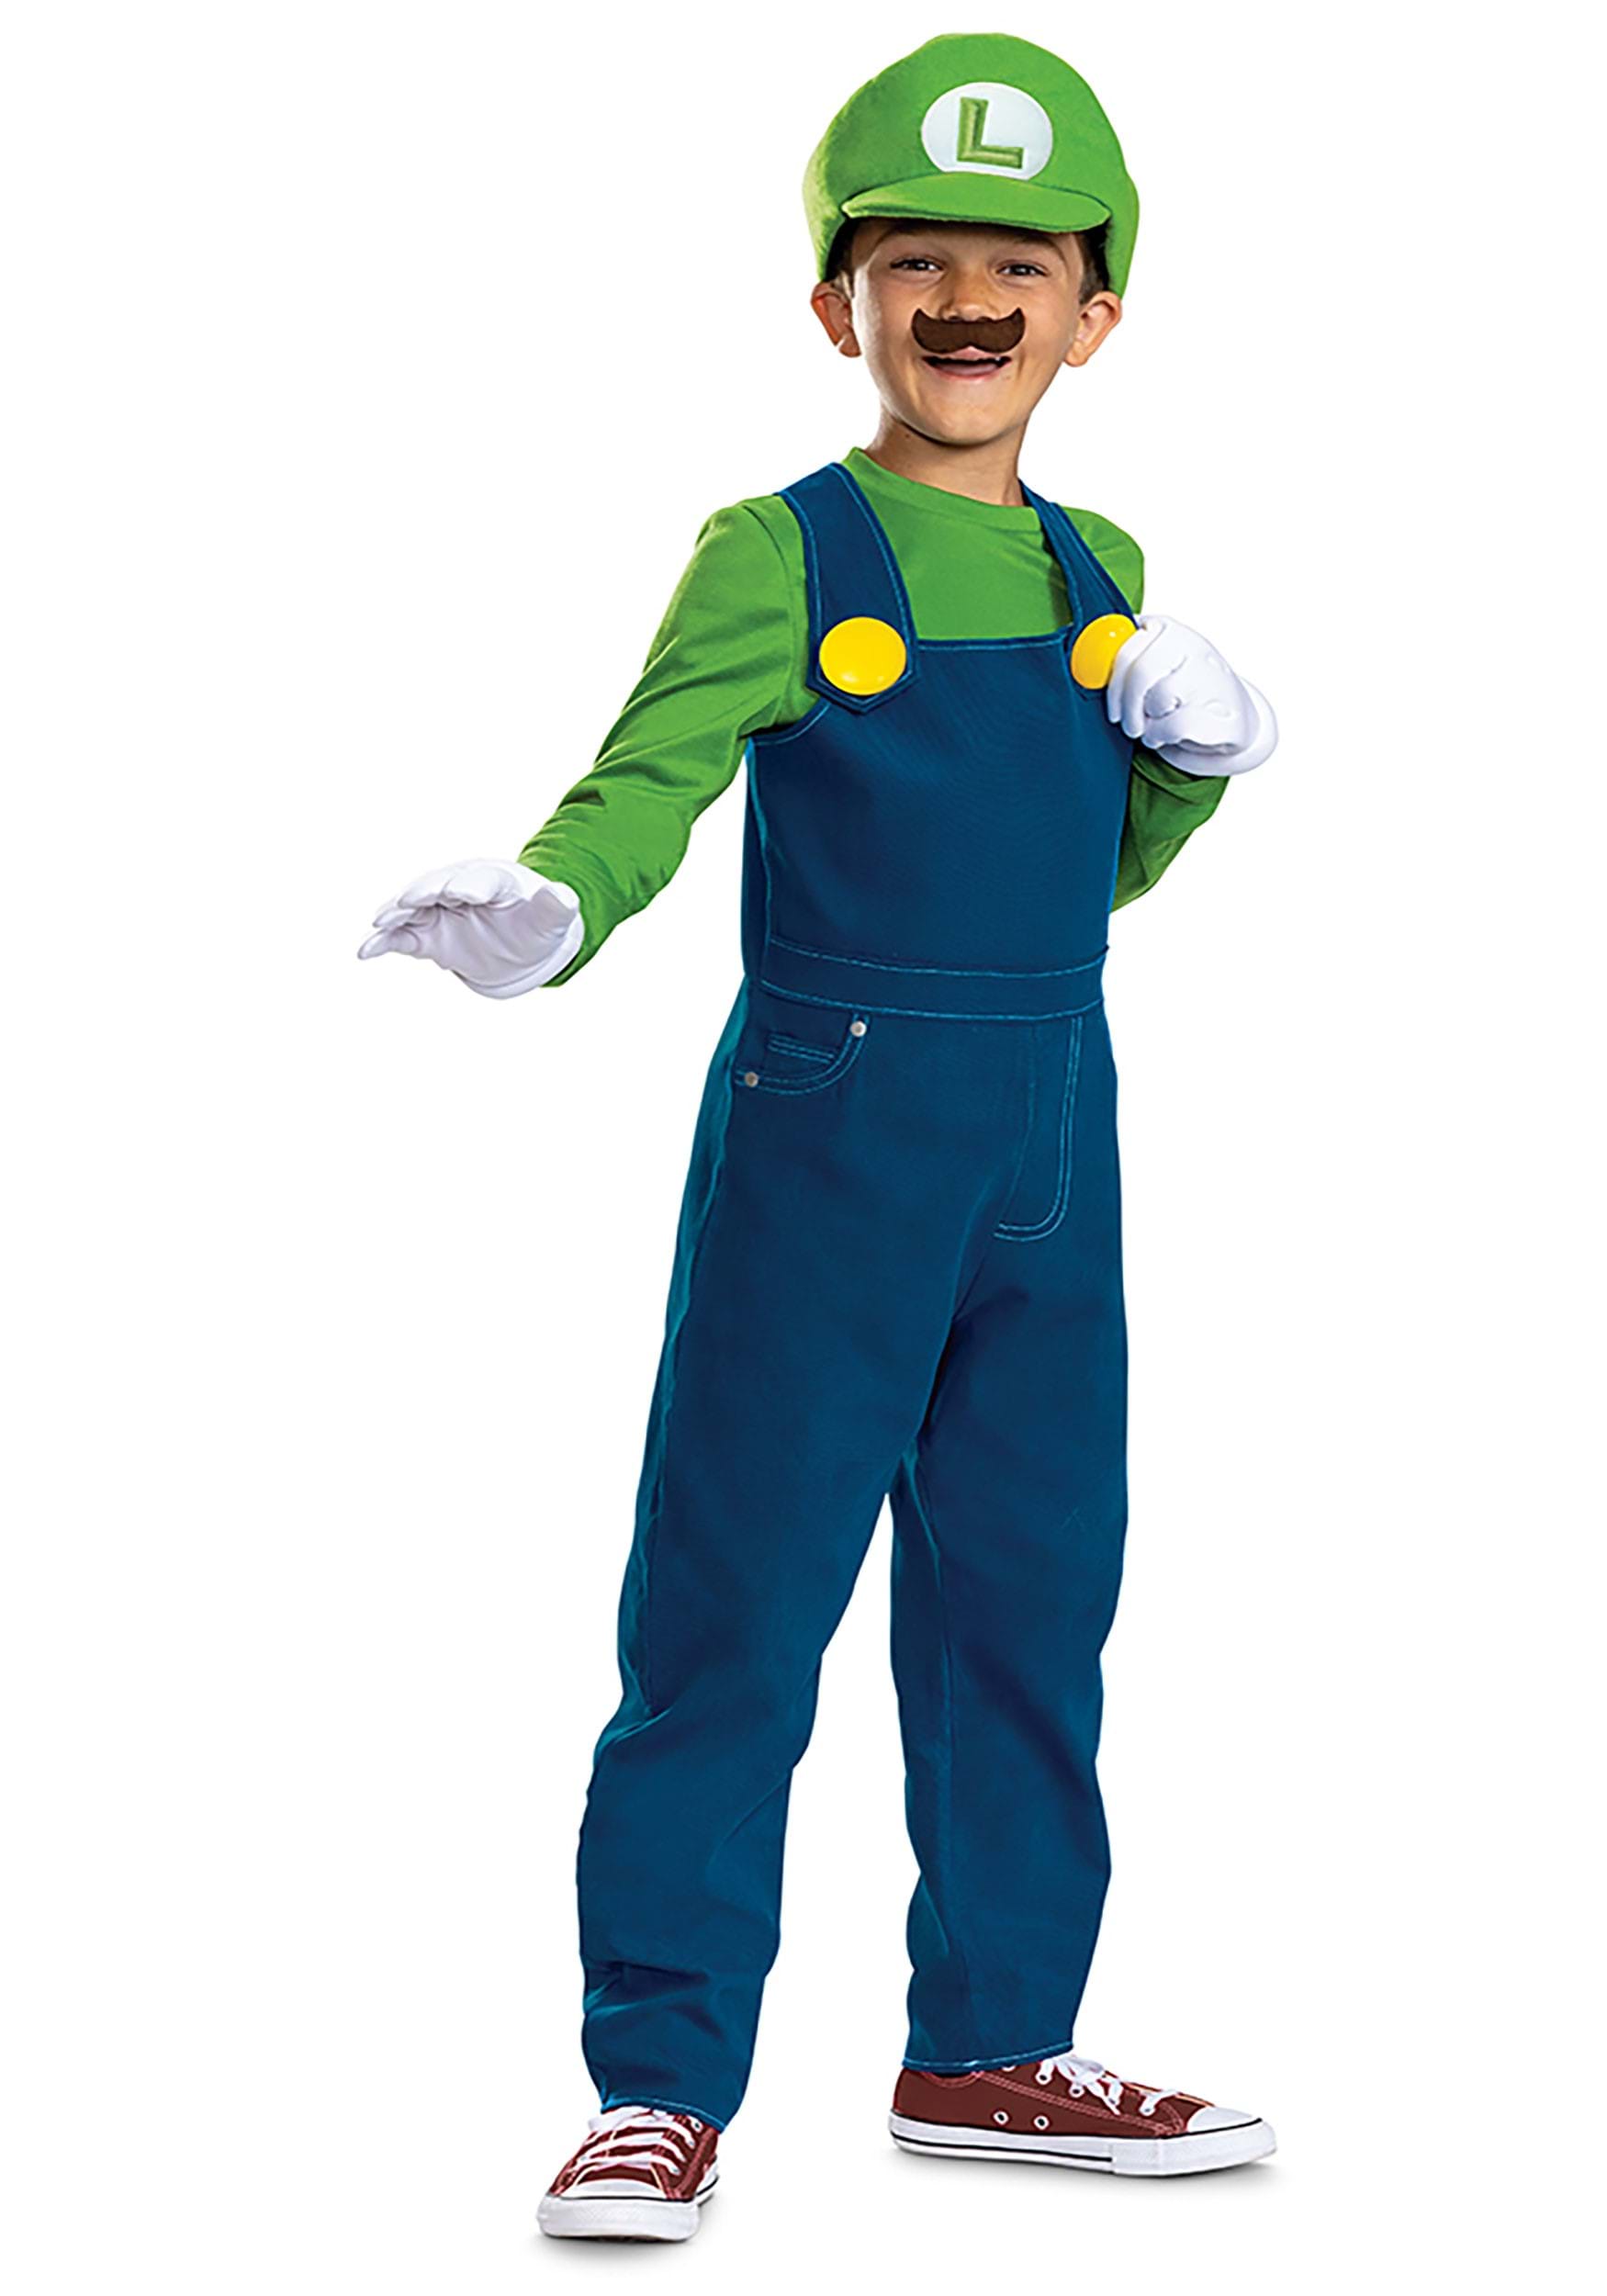 Luigi costume